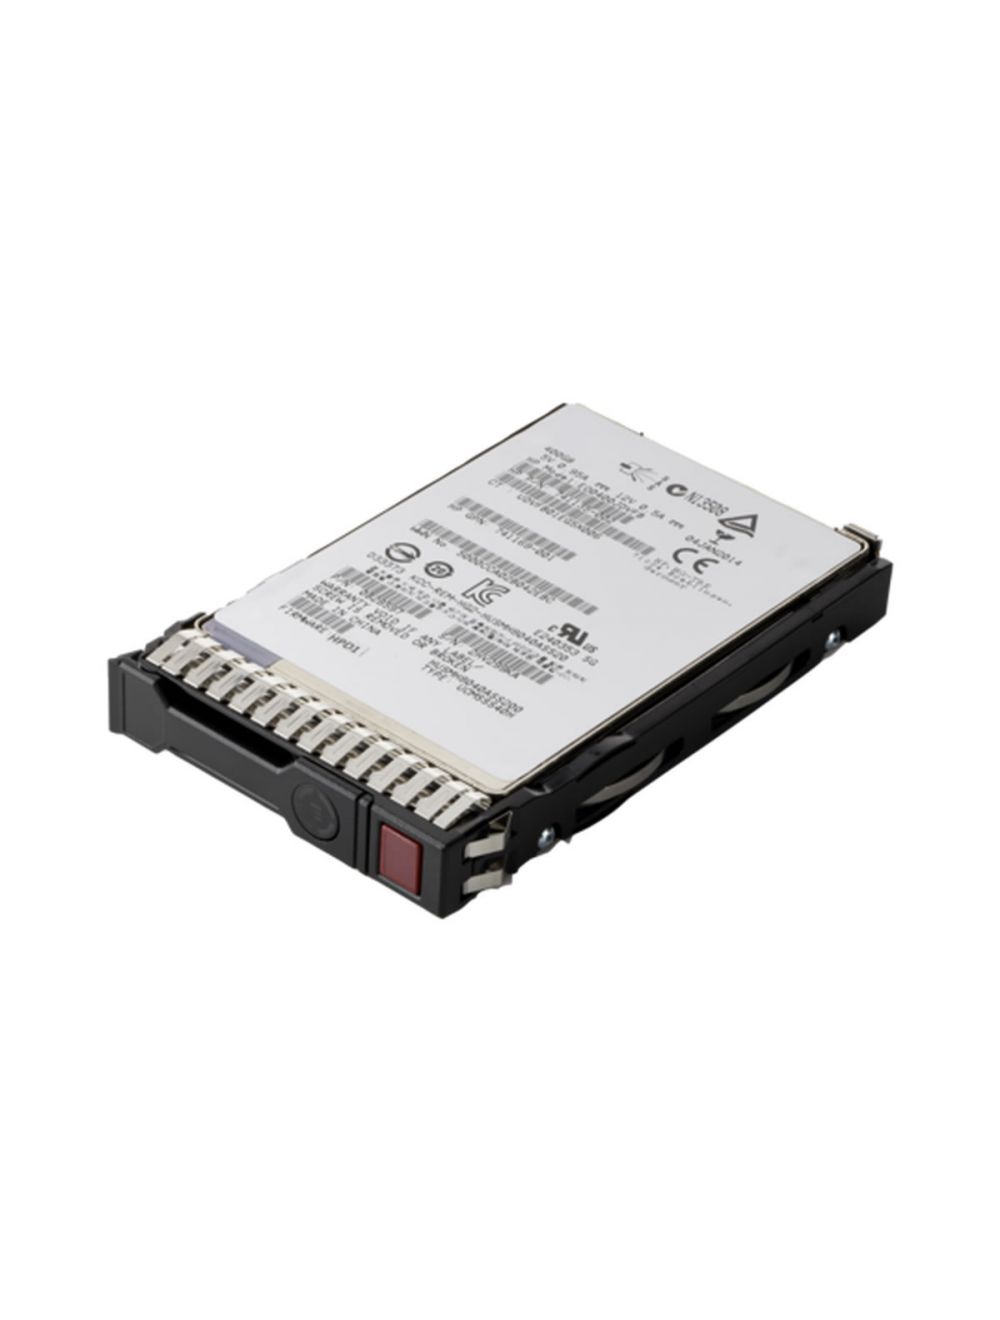 HPE 240GB SATA 6G Read Intensive SFF (2.5in) SC 3yr Wty Digitally